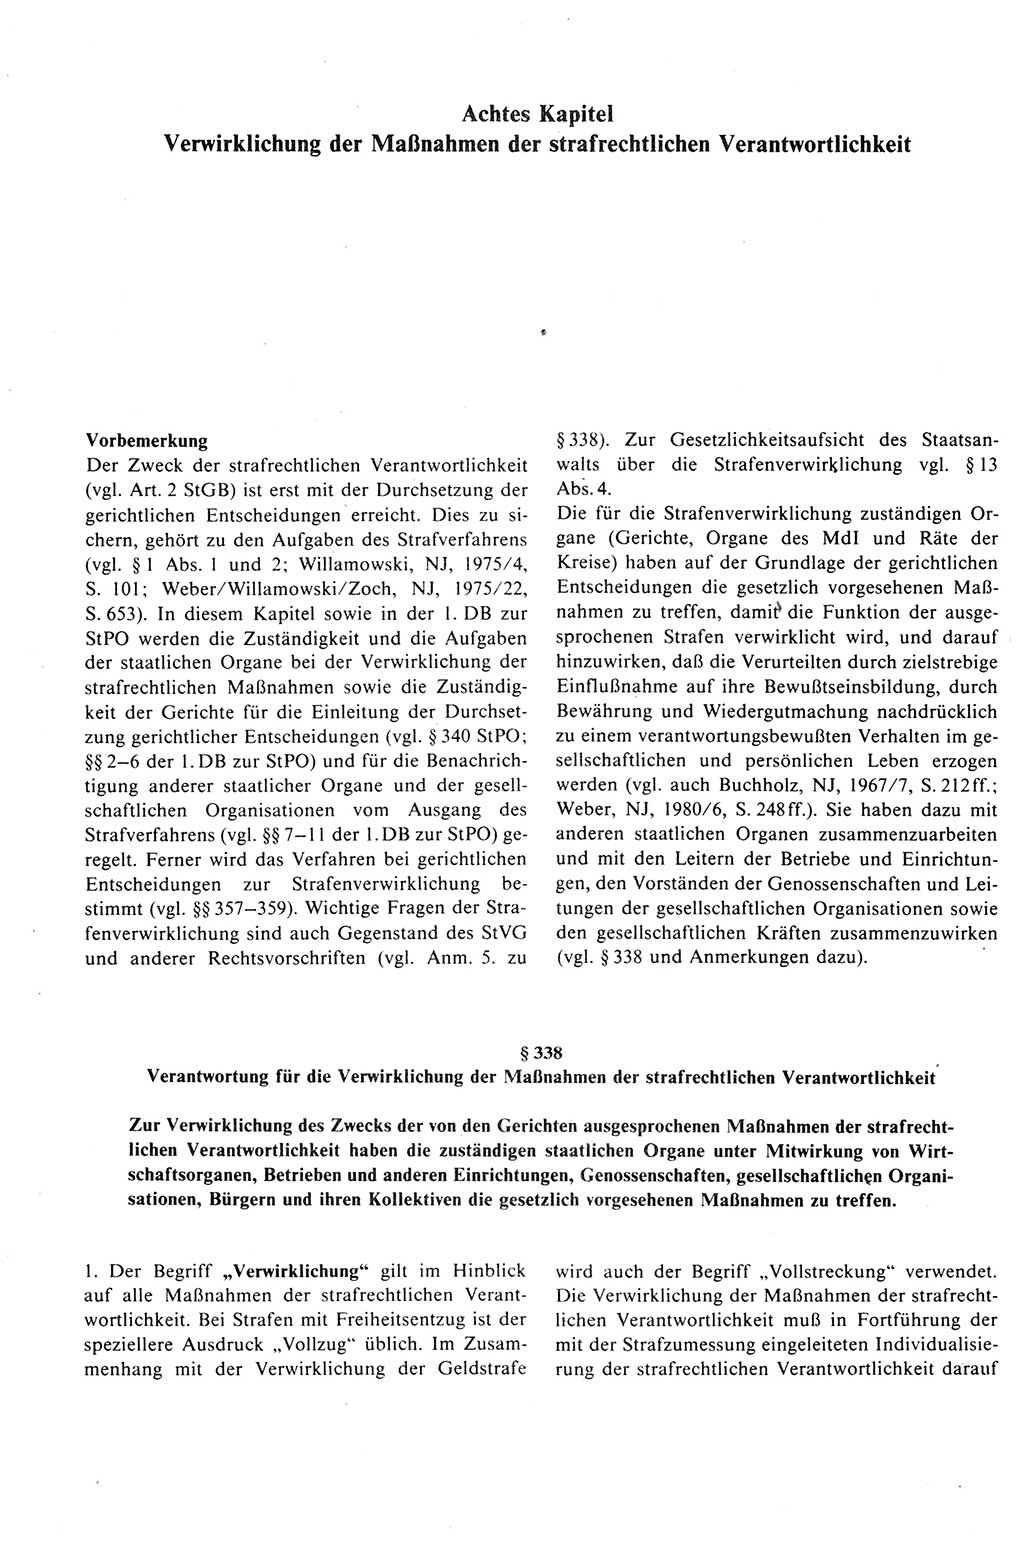 Strafprozeßrecht der DDR (Deutsche Demokratische Republik), Kommentar zur Strafprozeßordnung (StPO) 1989, Seite 384 (Strafprozeßr. DDR Komm. StPO 1989, S. 384)